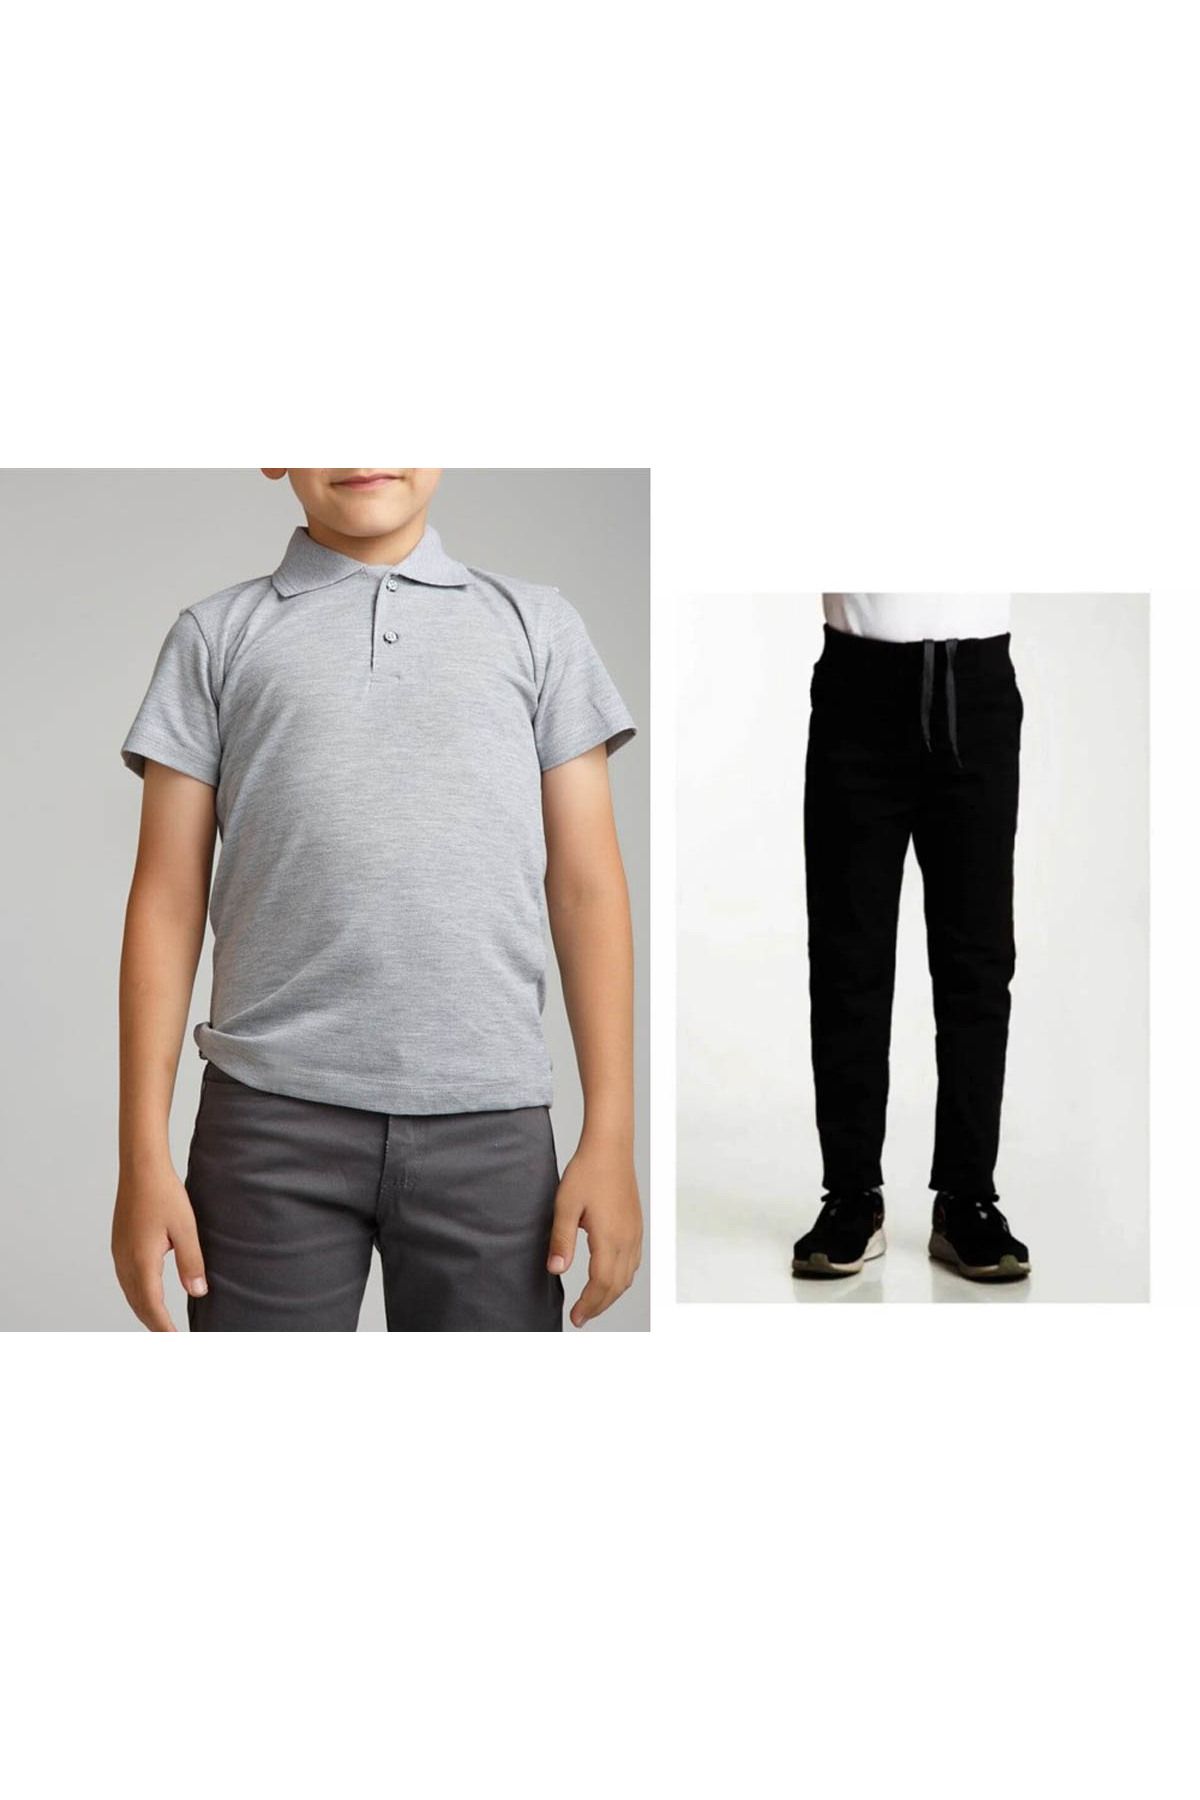 FATELLA Unisex çocuk okul ribana bel pantolon - gri kısa kol Polo yaka t-shirt 2li takım